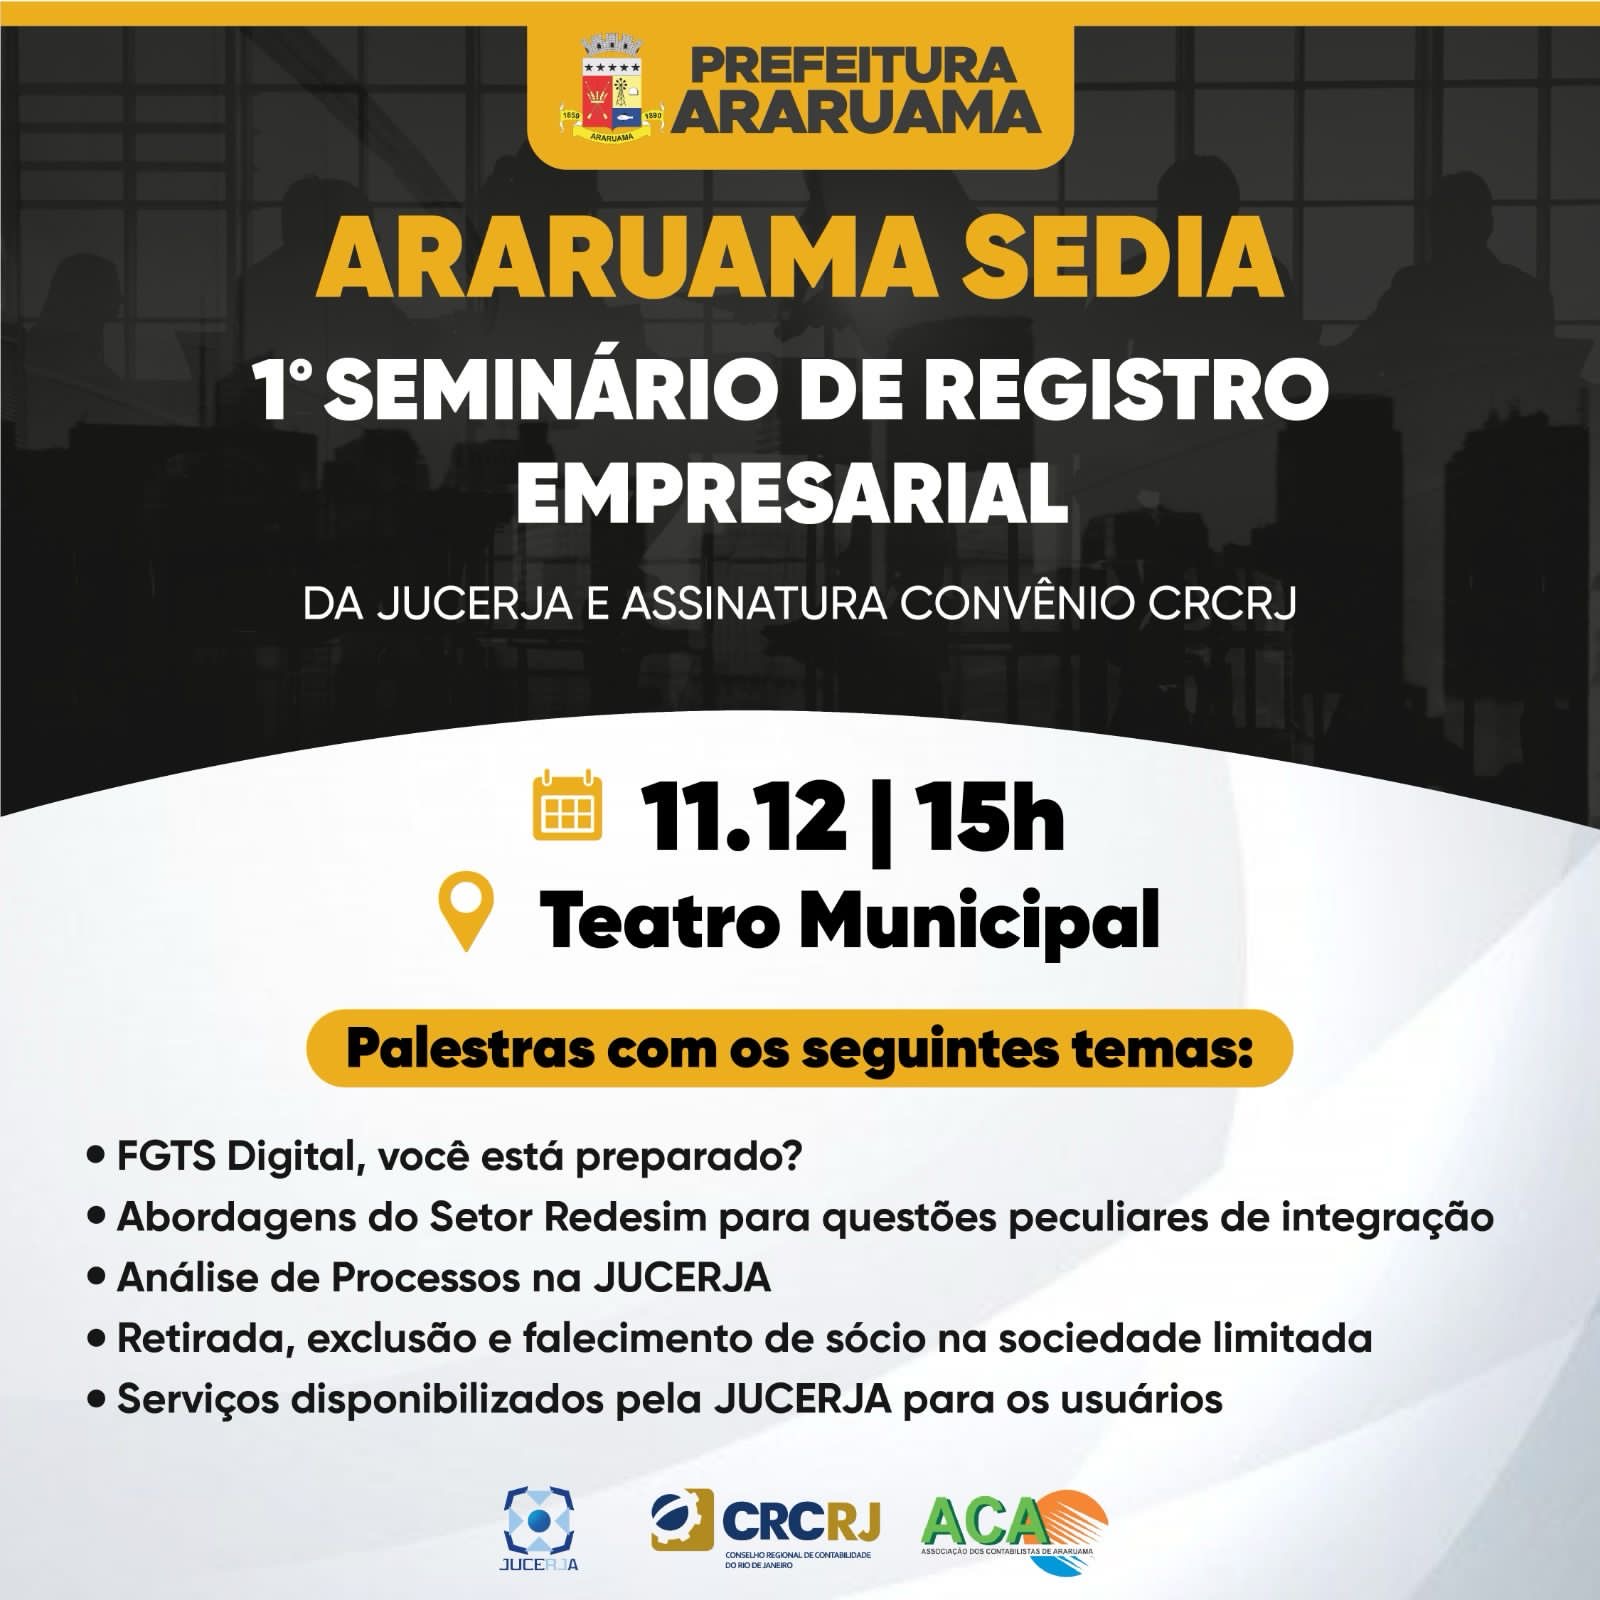 Araruama vai sediar o 1º Seminário de Registro Empresarial da JUCERJA voltado para o fortalecimento do setor